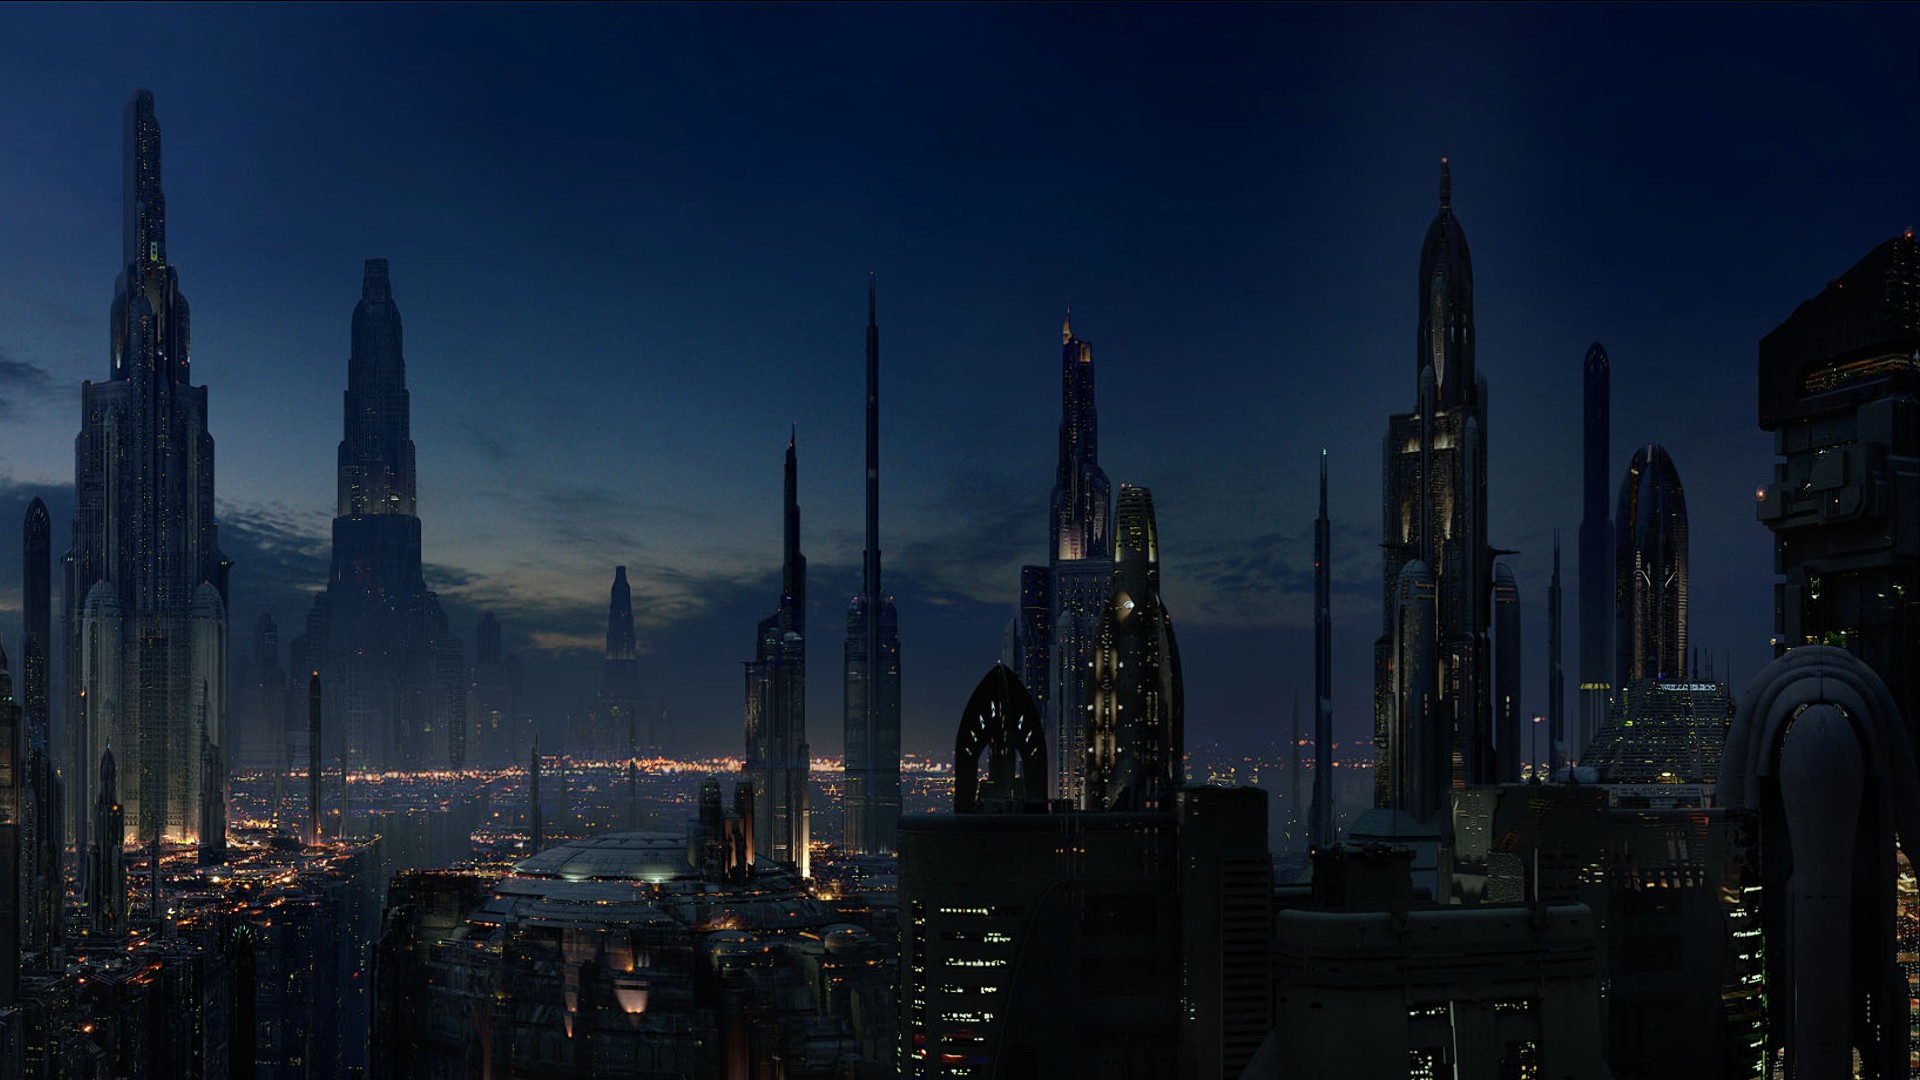 Futuristic Architecture Cityscape Futuristic City Star Wars Coruscant Movies Science Fiction 1920x1080